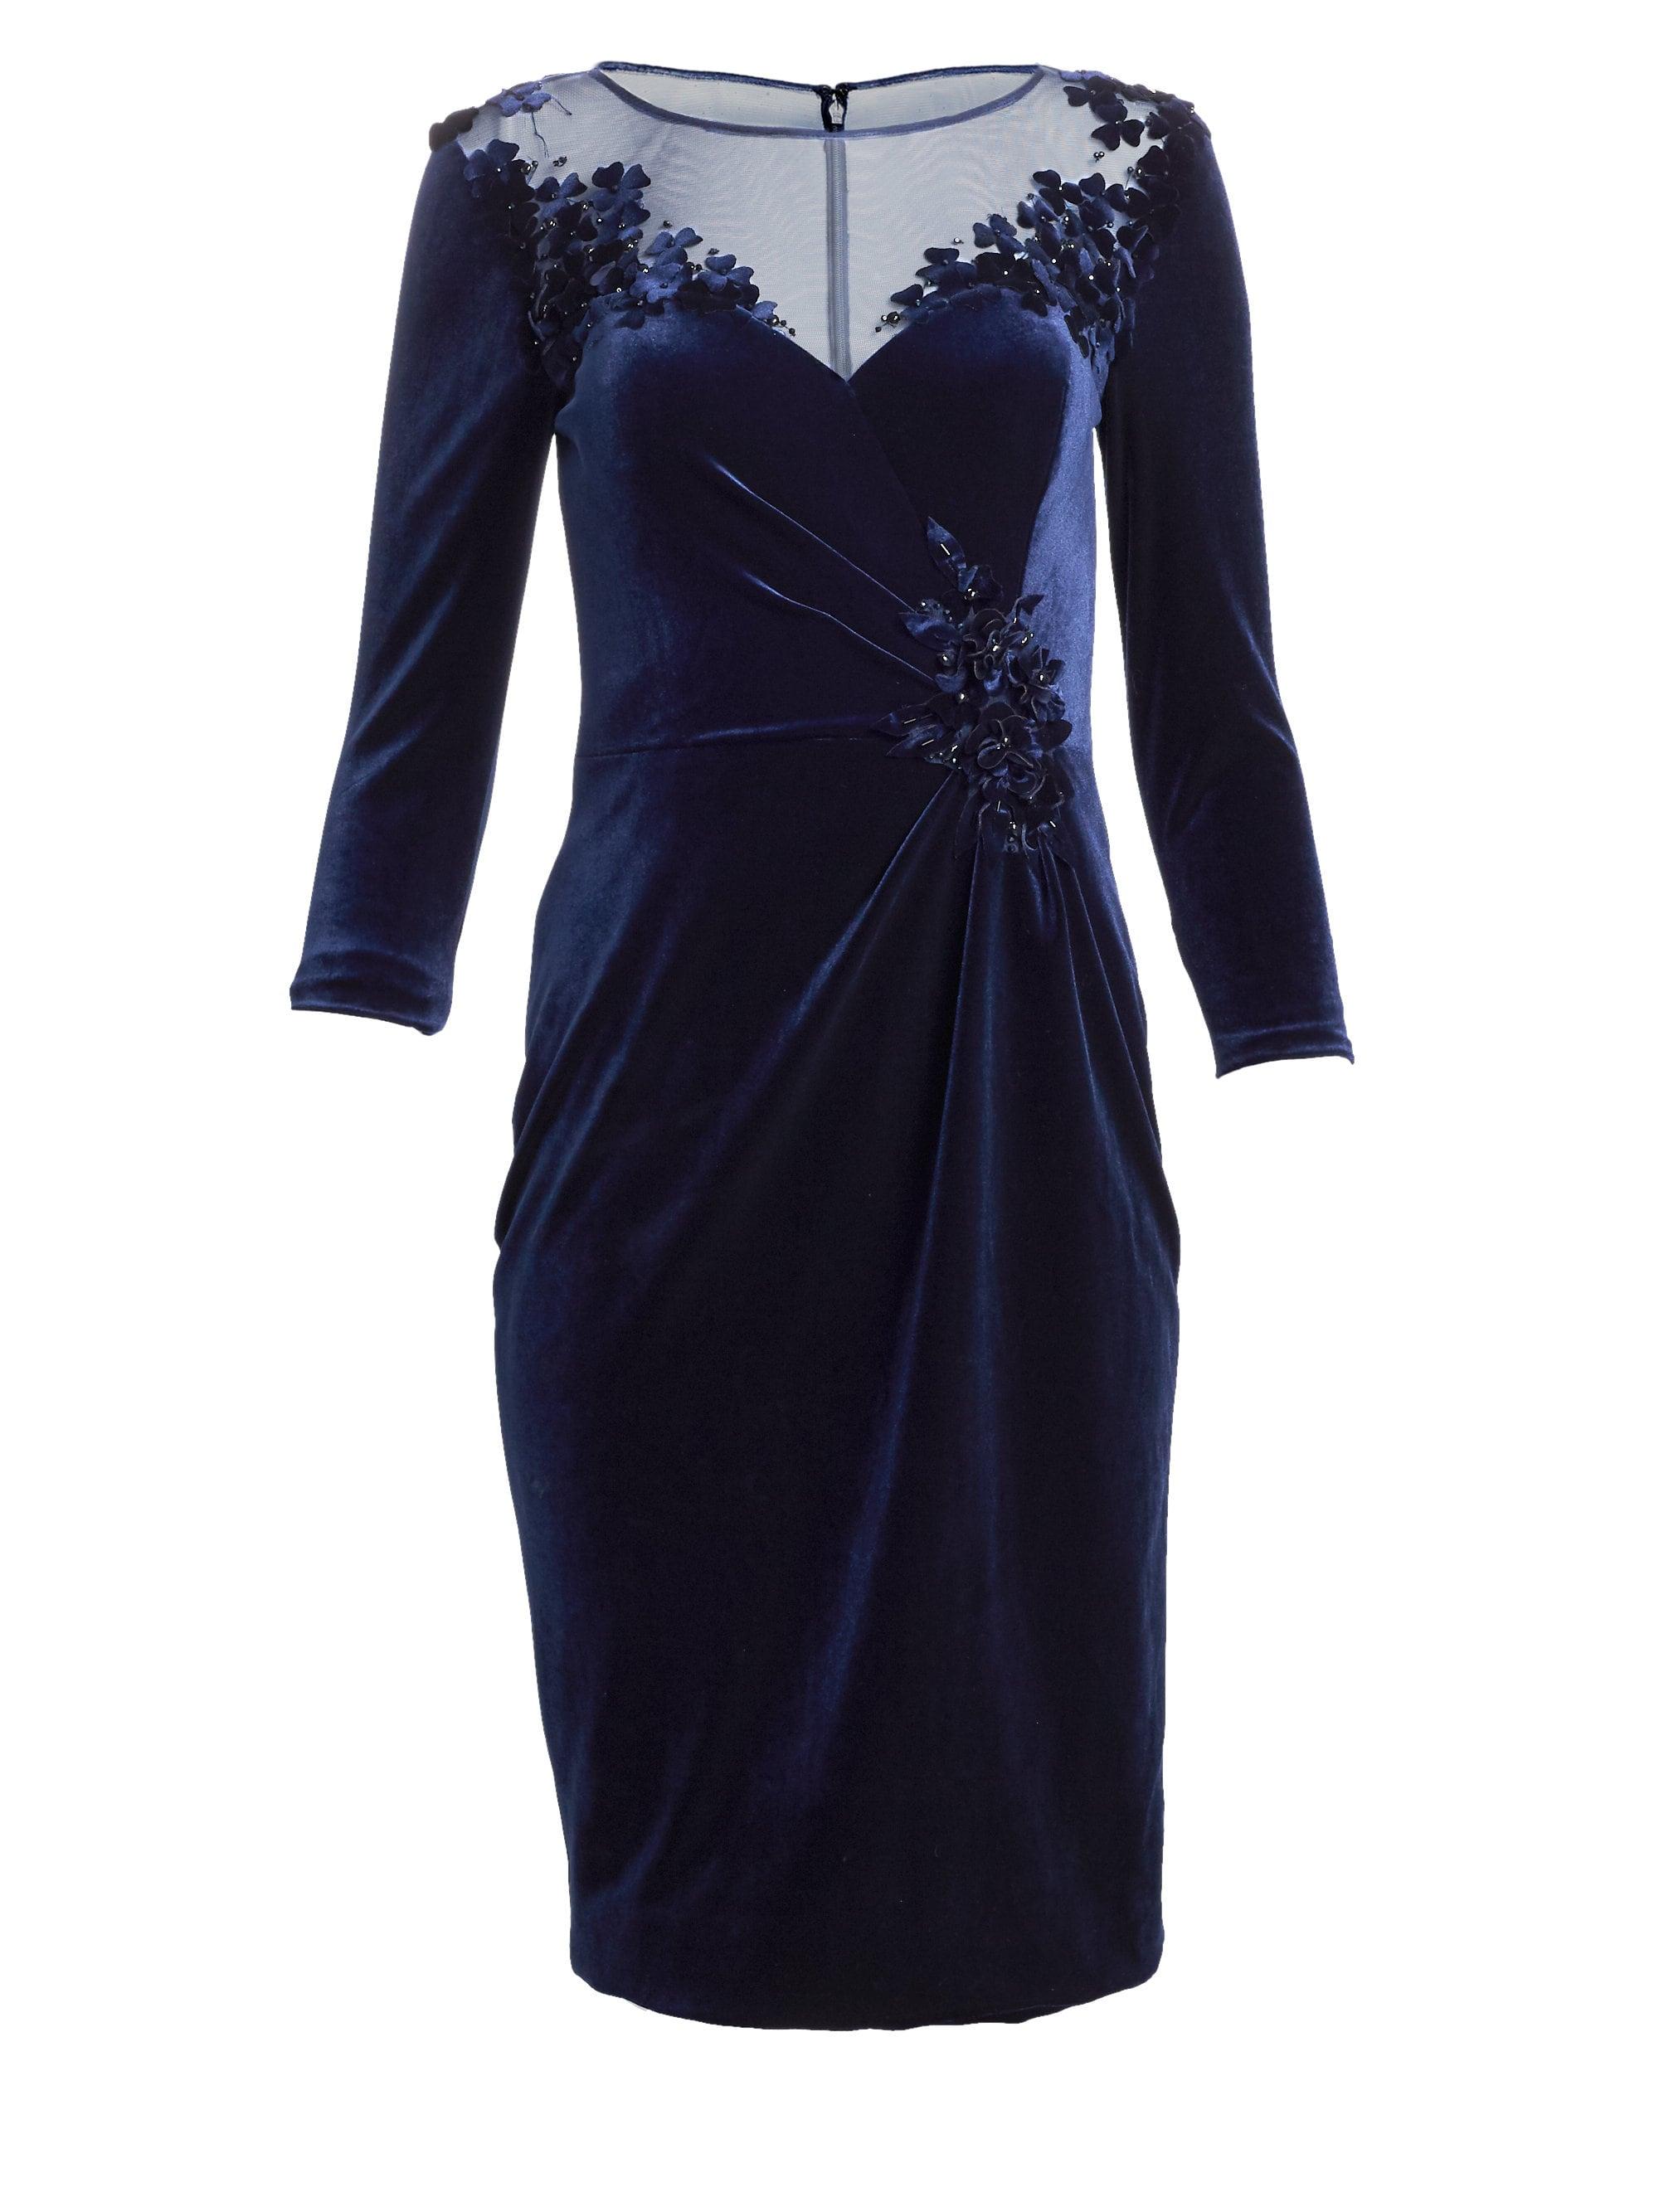 Lyst - Teri Jon Women's Embellished Velvet Cocktail Dress - Midnight ...